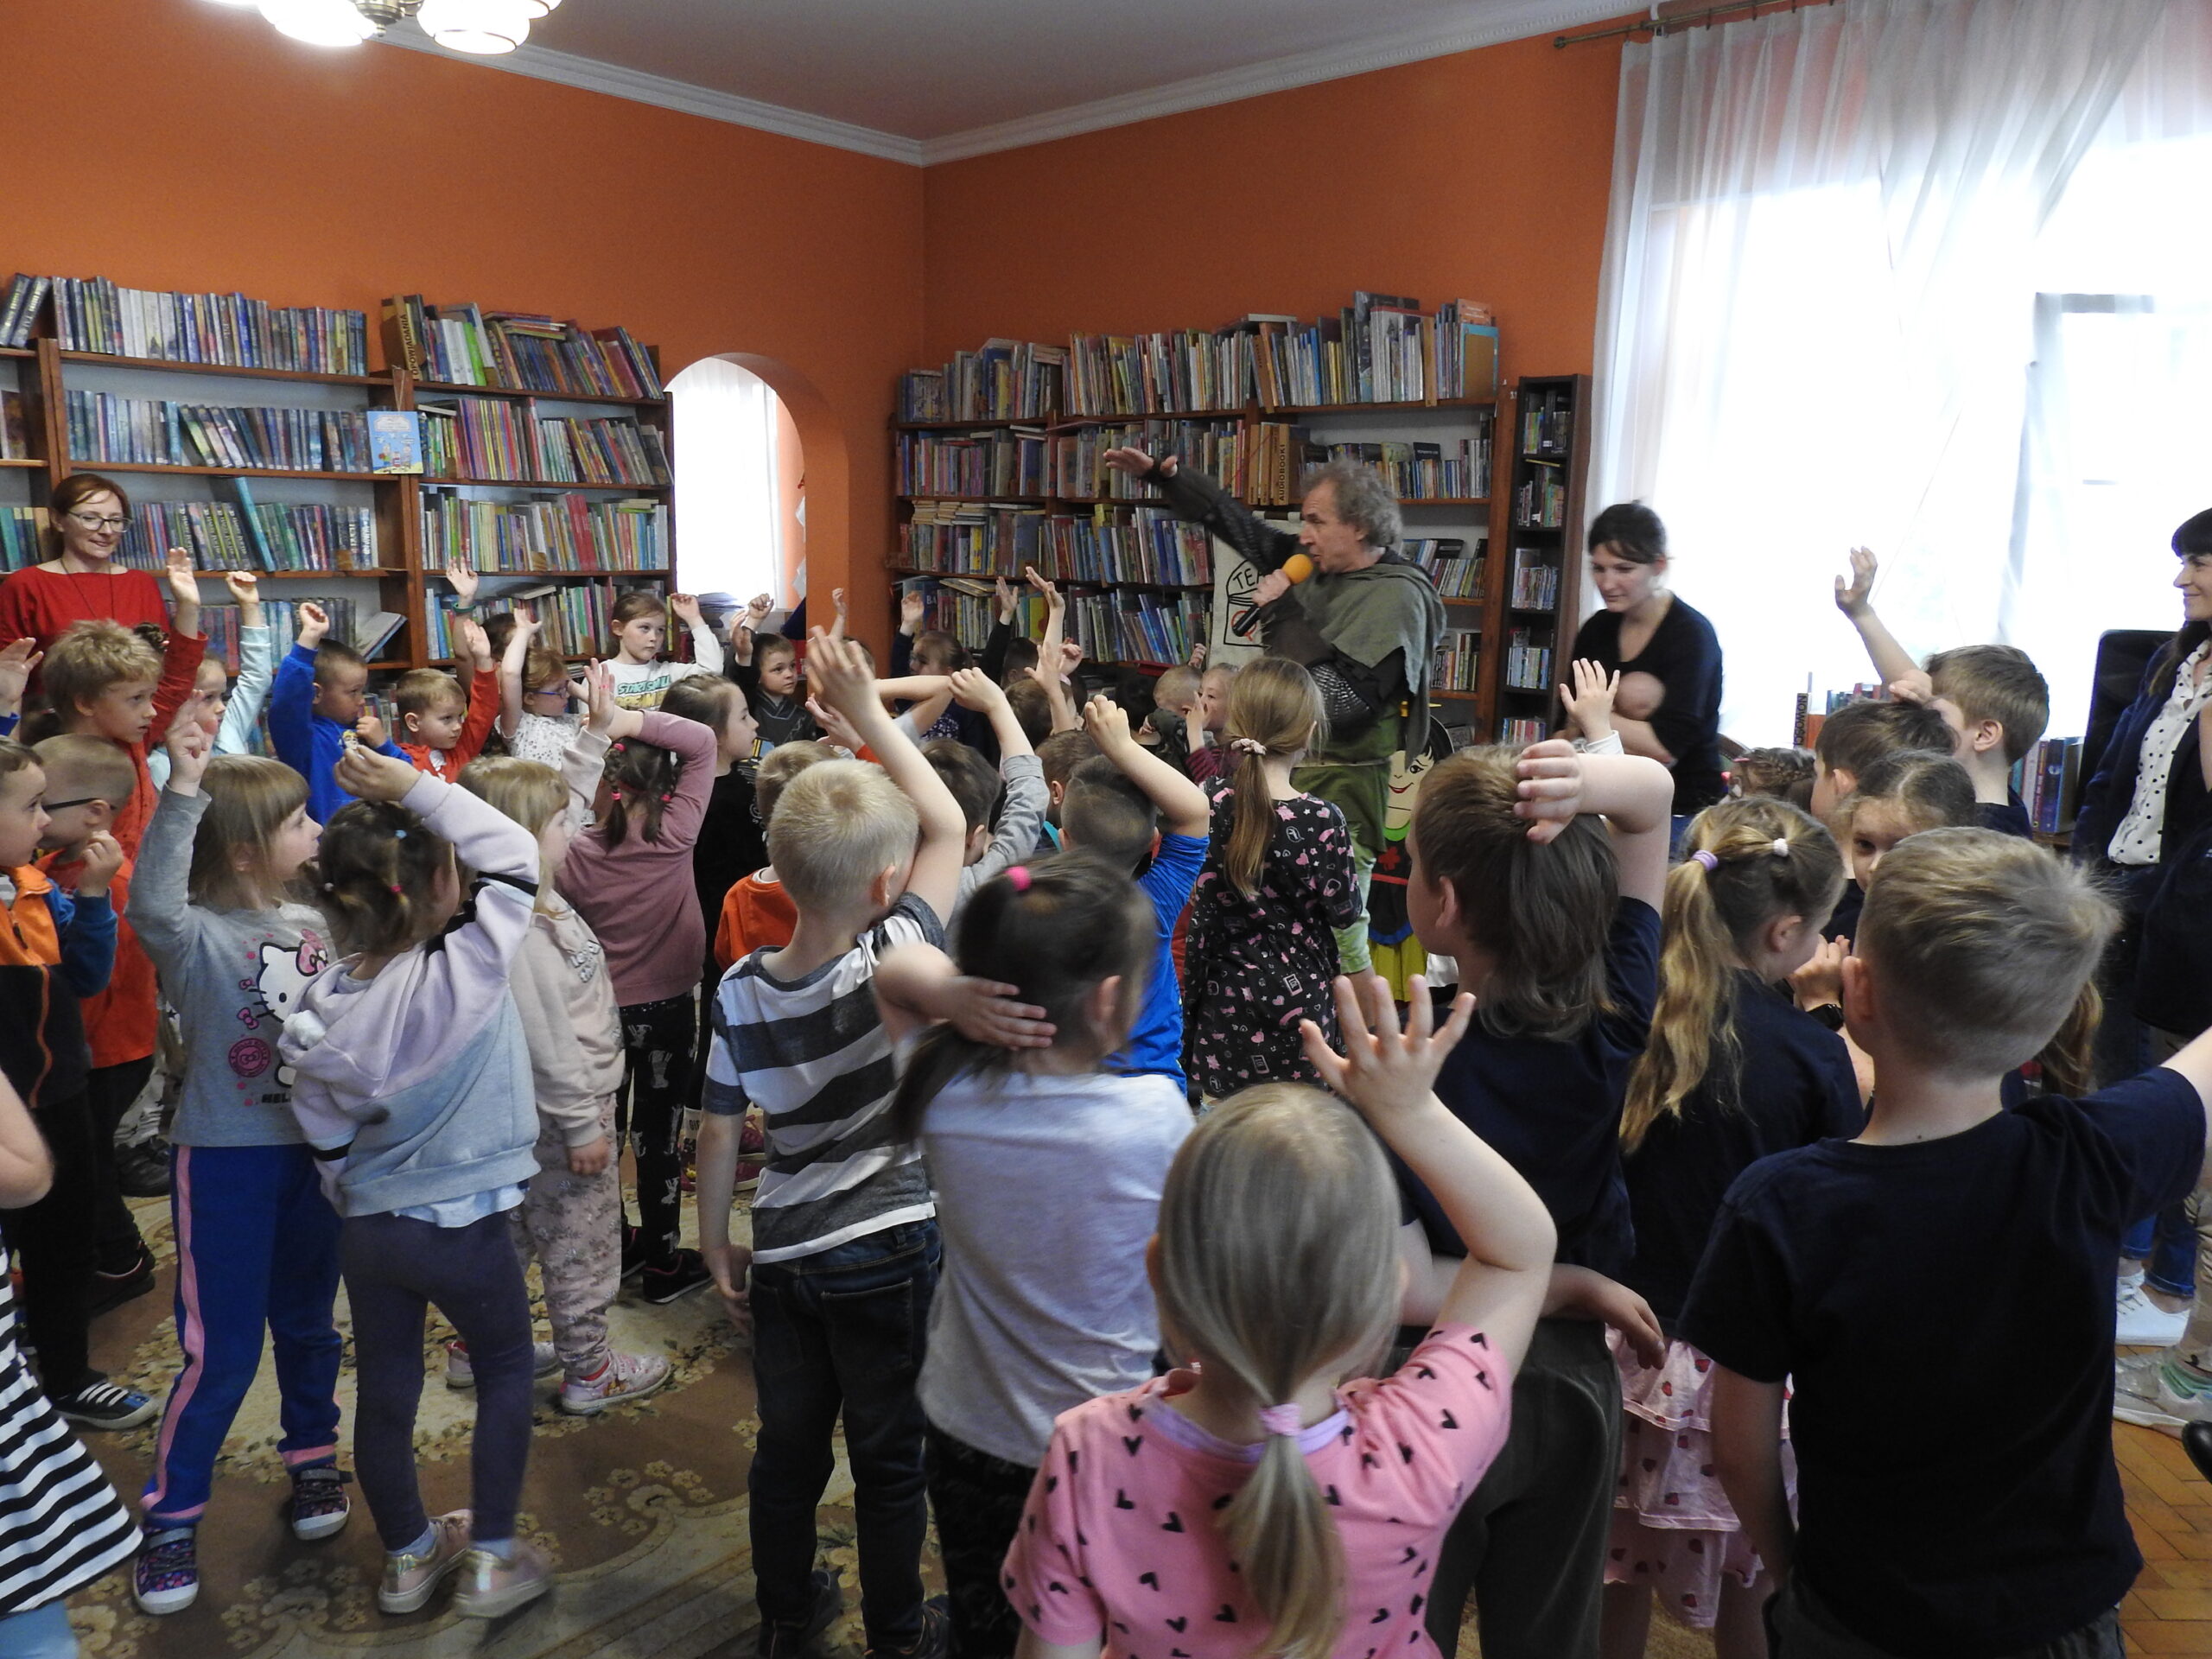 Duża grupa dzieci stoi zwrócona w stronę mężczyzny ubranego w zielono-brązowy kostium i trzymającego mikrofon. Wszyscy trzymają jedną rękę w górze. W tle regały z książkami. 